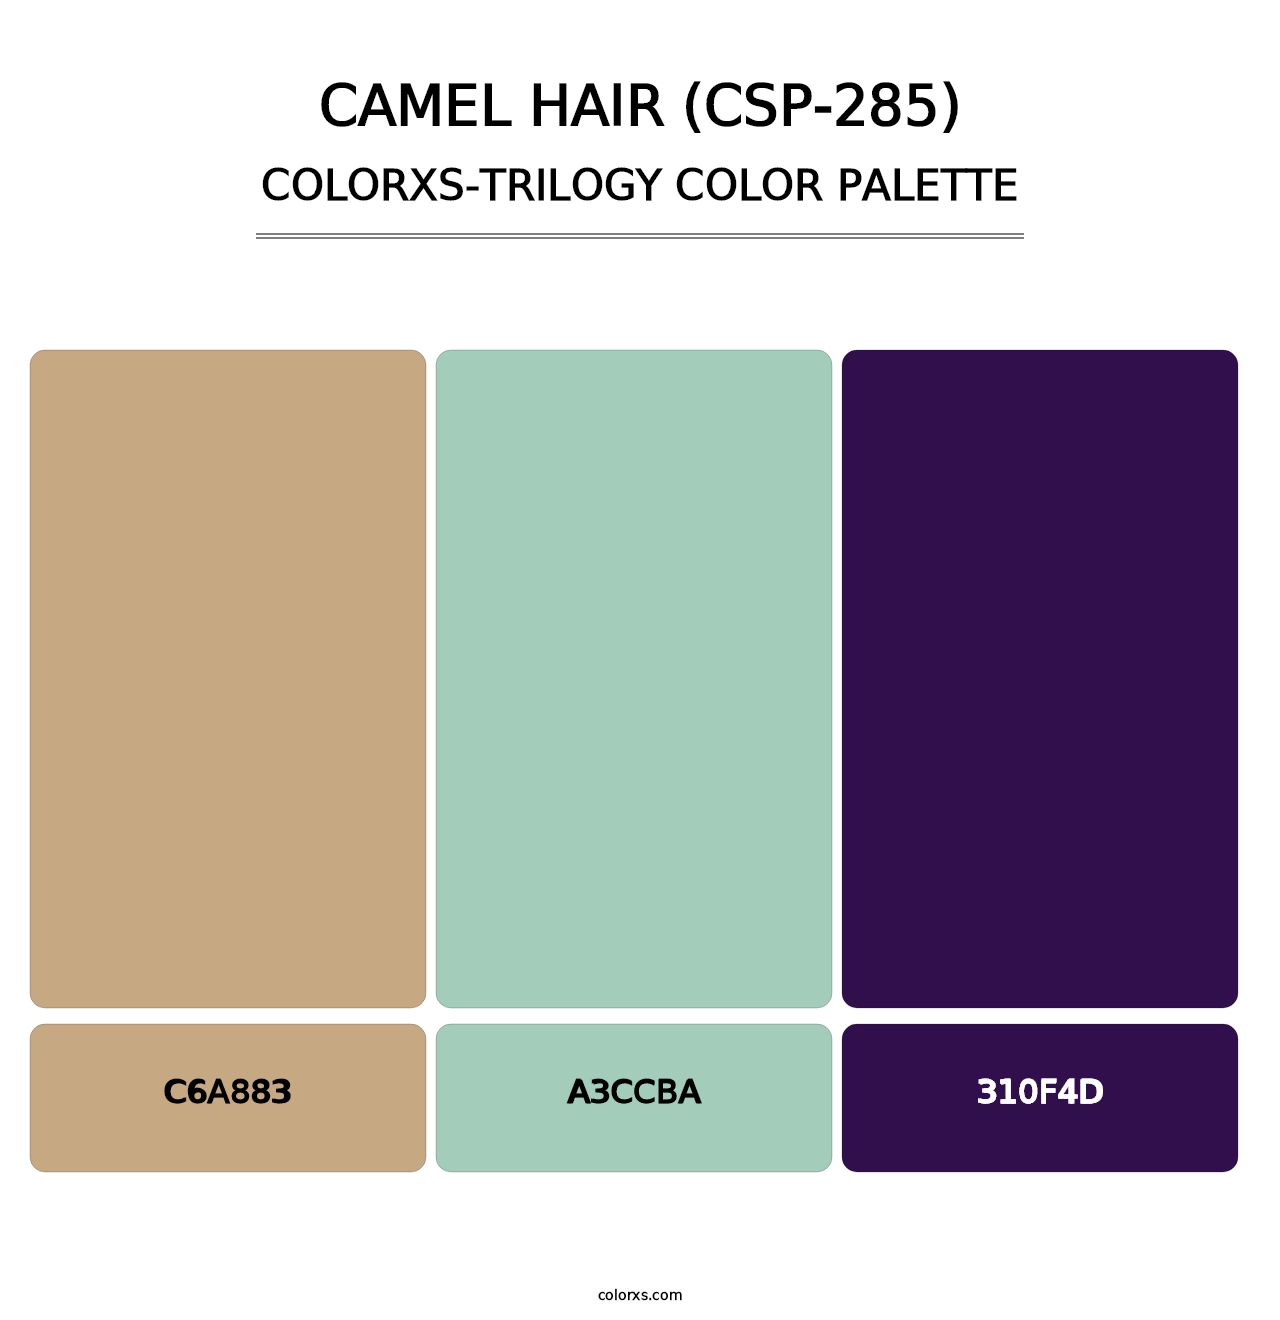 Camel Hair (CSP-285) - Colorxs Trilogy Palette